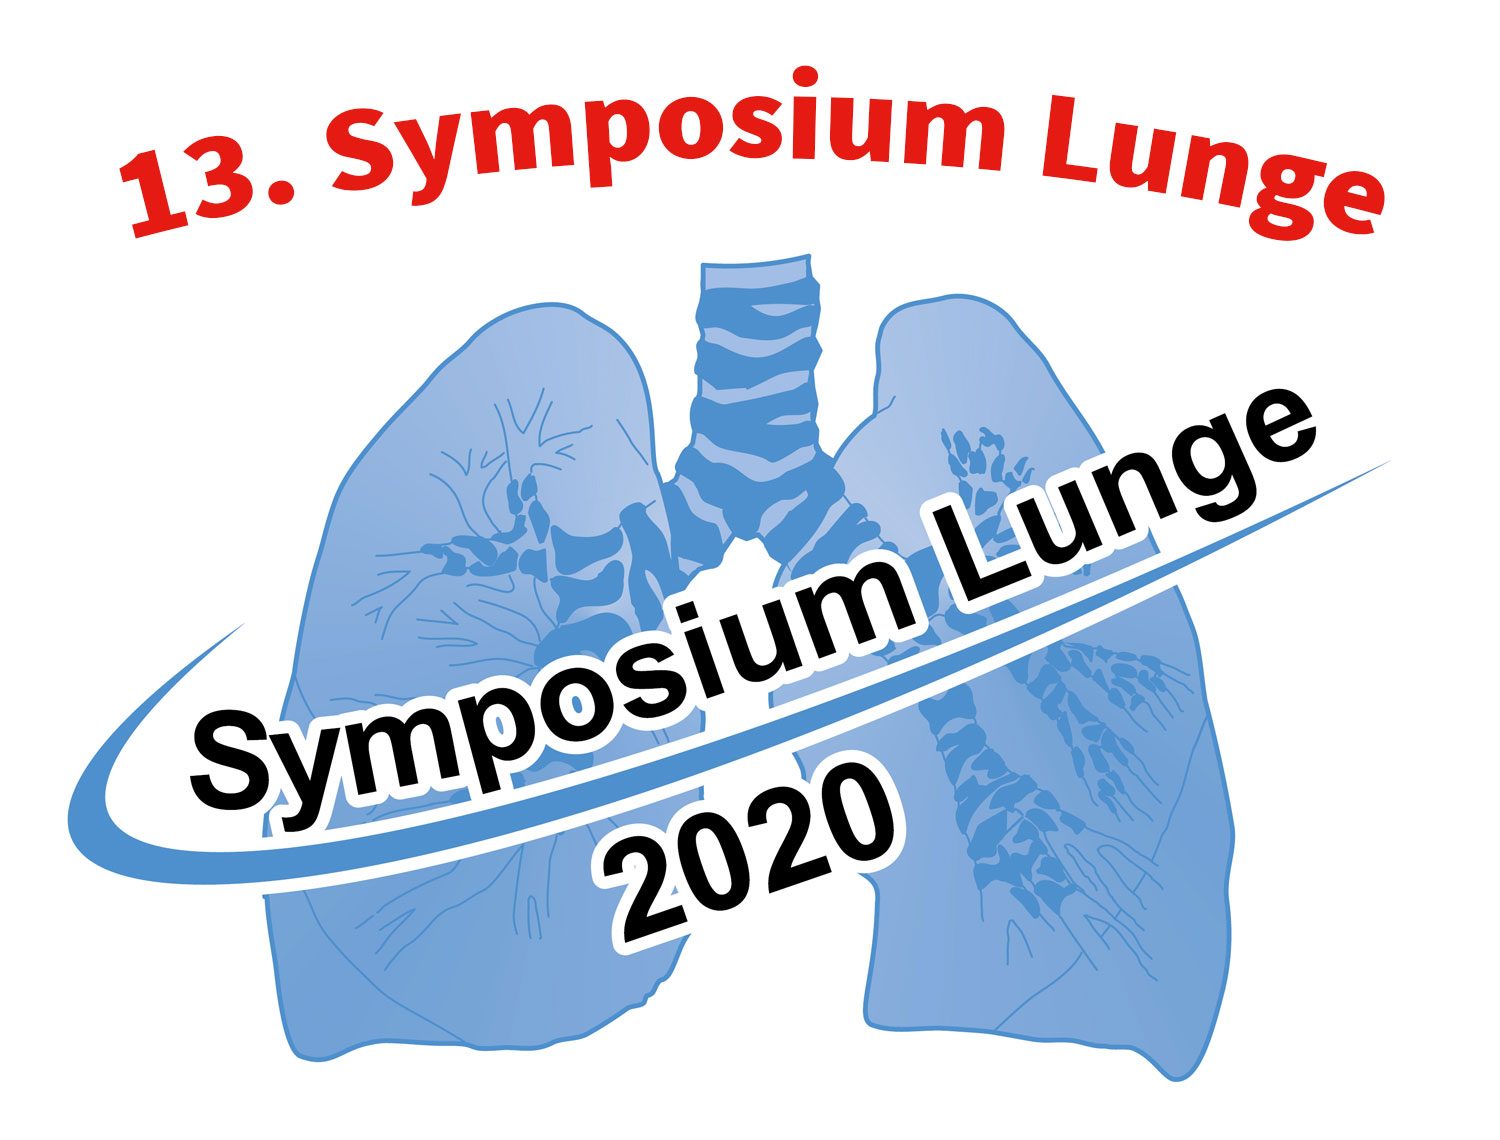 13. Symposium – Lunge